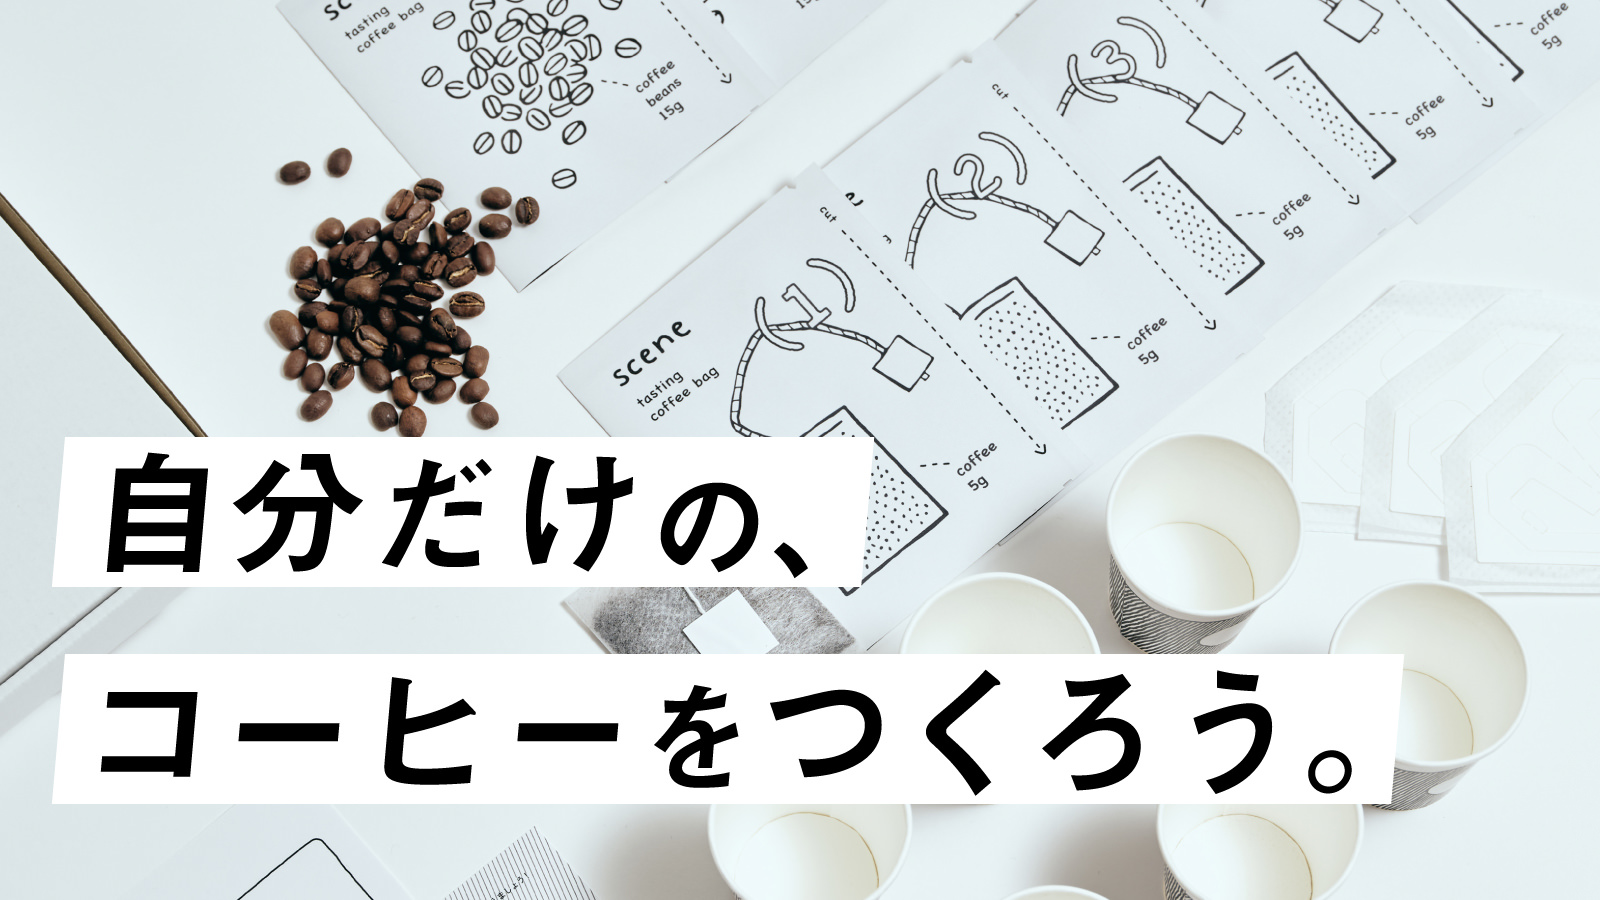 ＜全てのコーヒーラバーへ！＞　自分だけのコーヒーが
作れるキット「scene(シーン)」を、Makuakeにて先行販売開始！